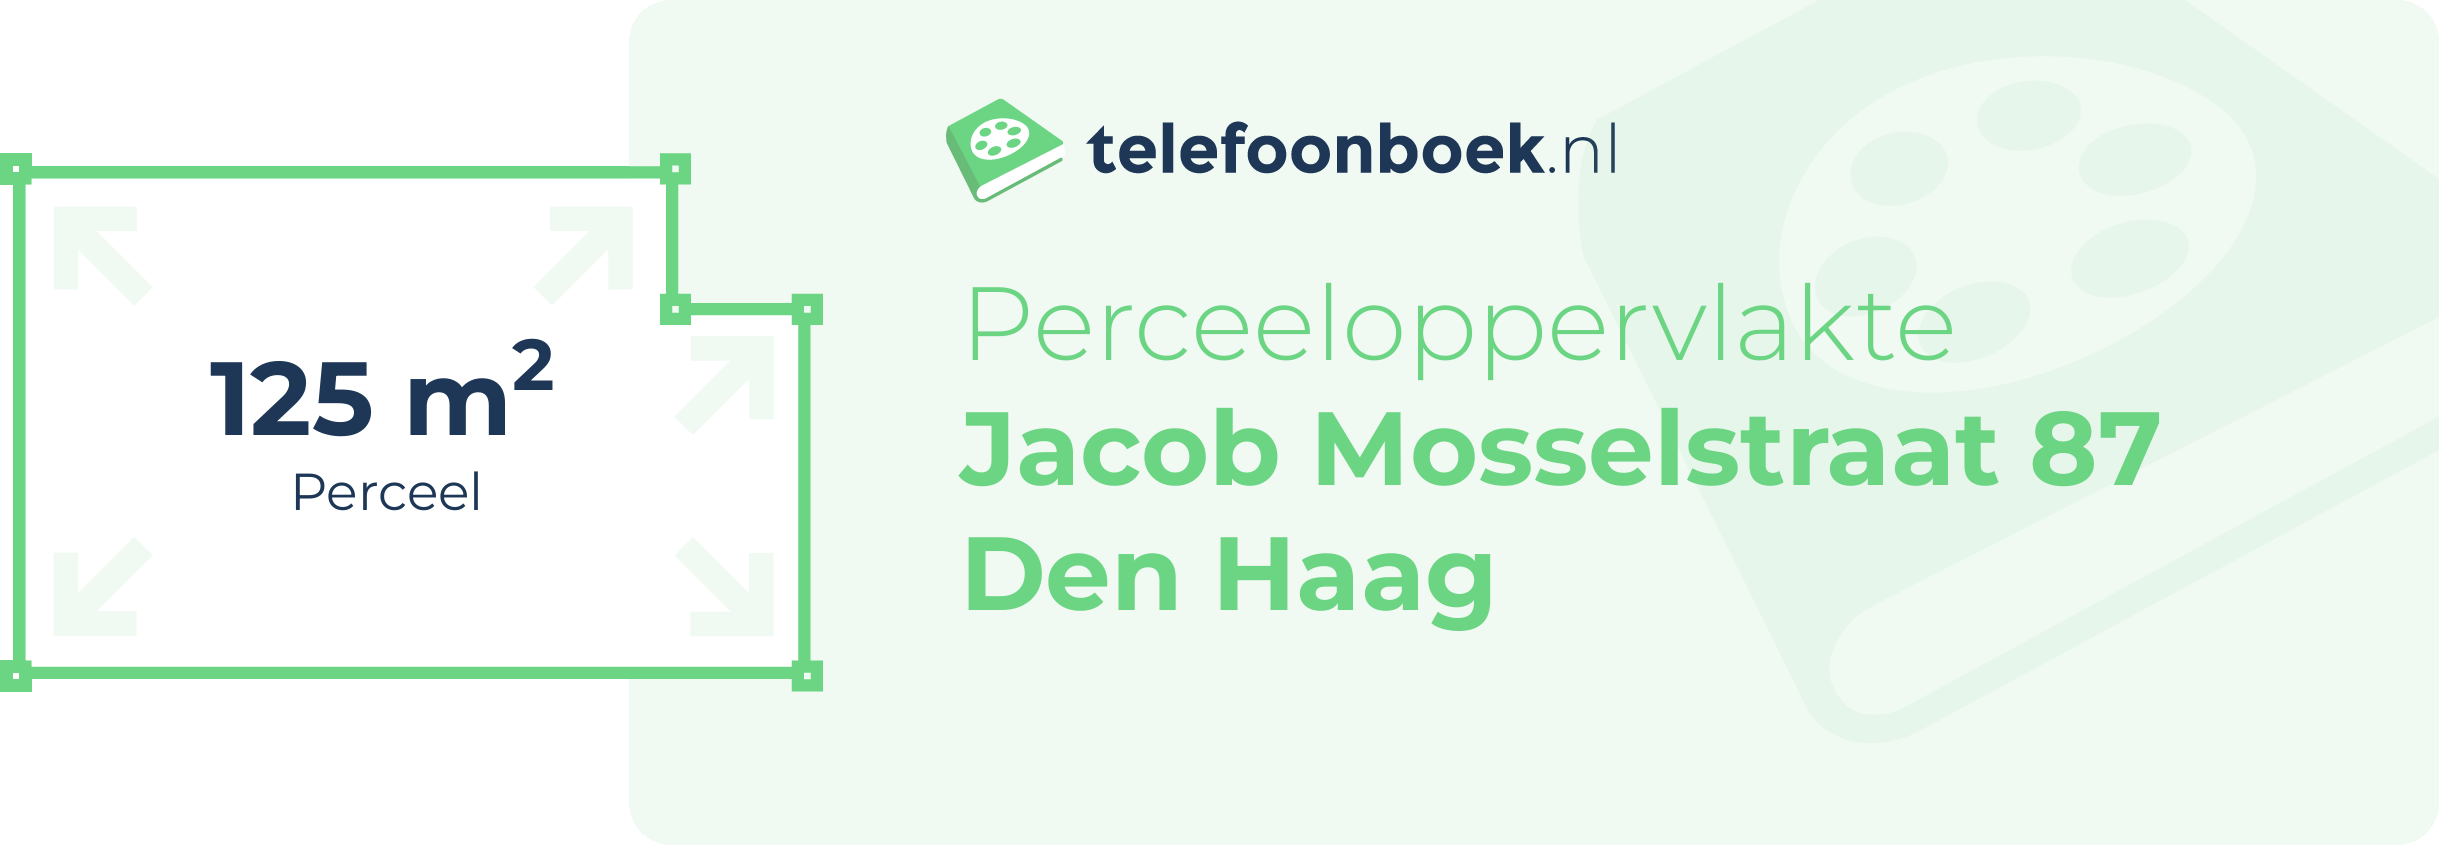 Perceeloppervlakte Jacob Mosselstraat 87 Den Haag